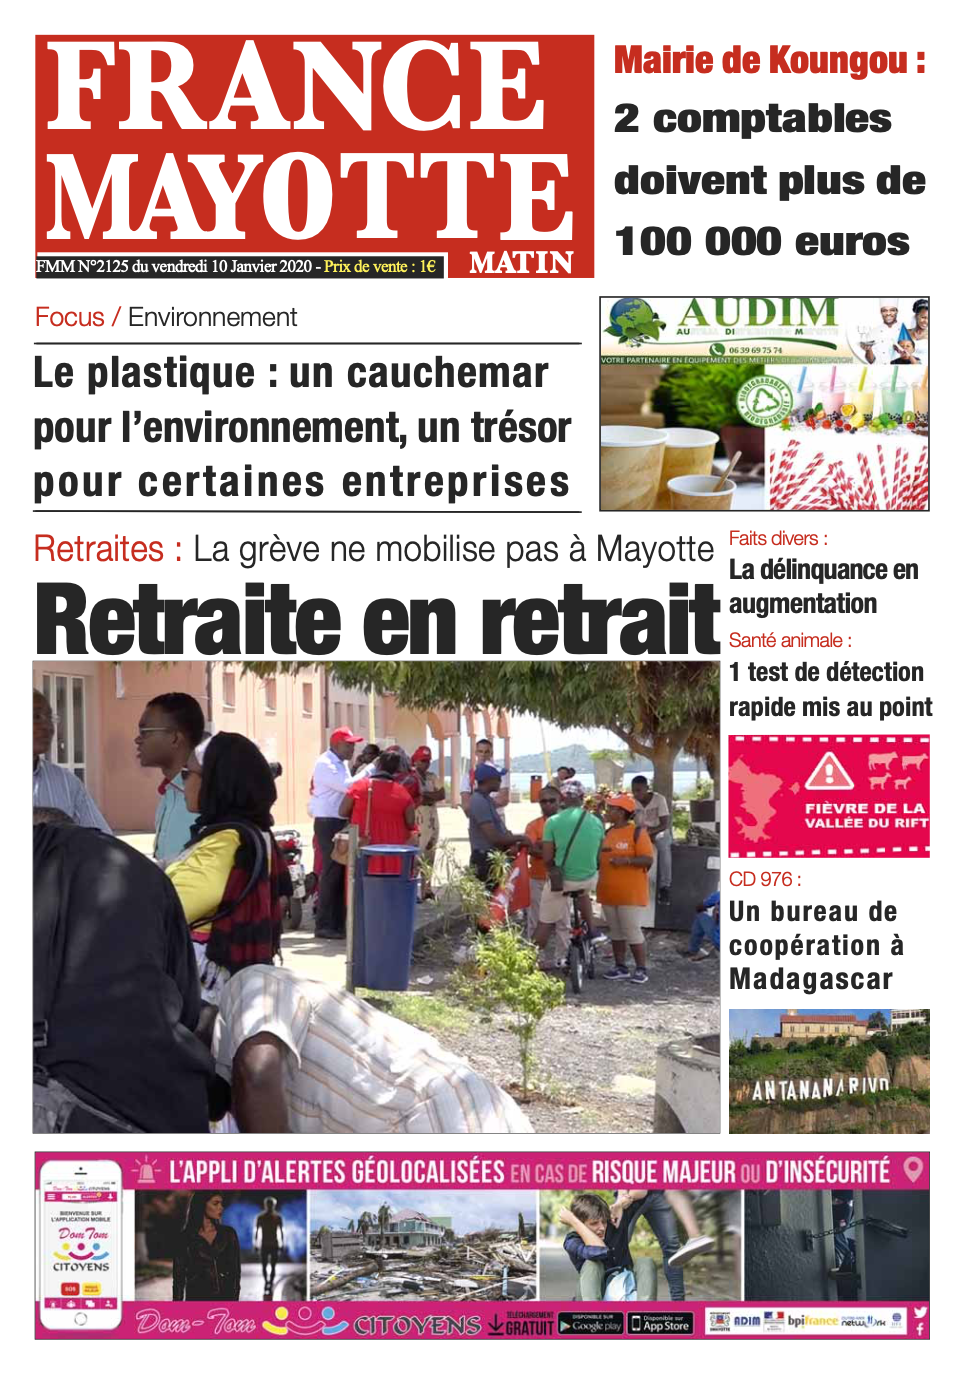 France Mayotte Vendredi 10 janvier 2020